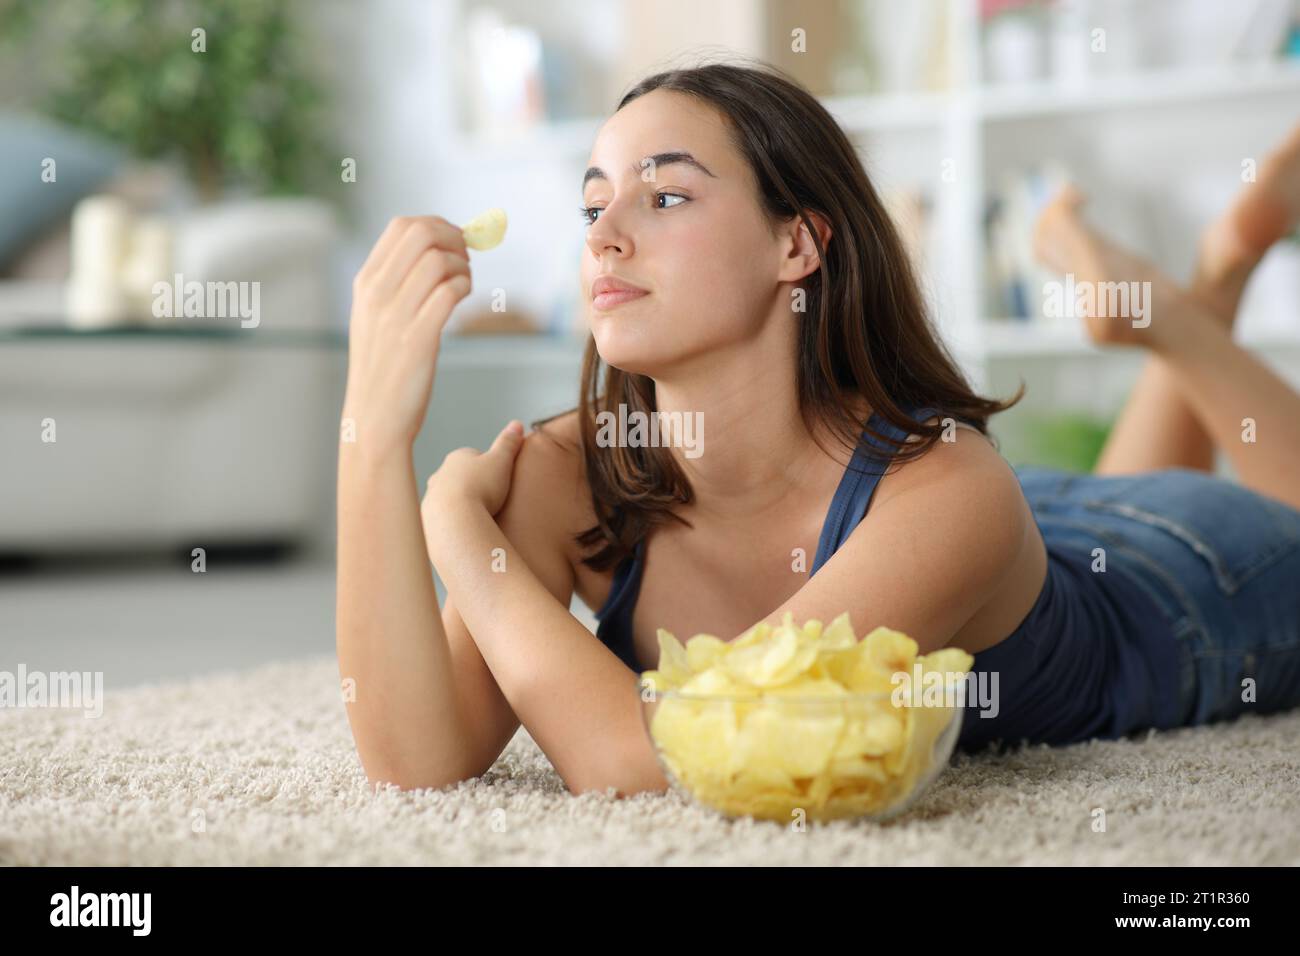 Nachdenkliche Frau, die wegschaut und Kartoffelchips isst, die zu Hause auf dem Boden liegen Stockfoto